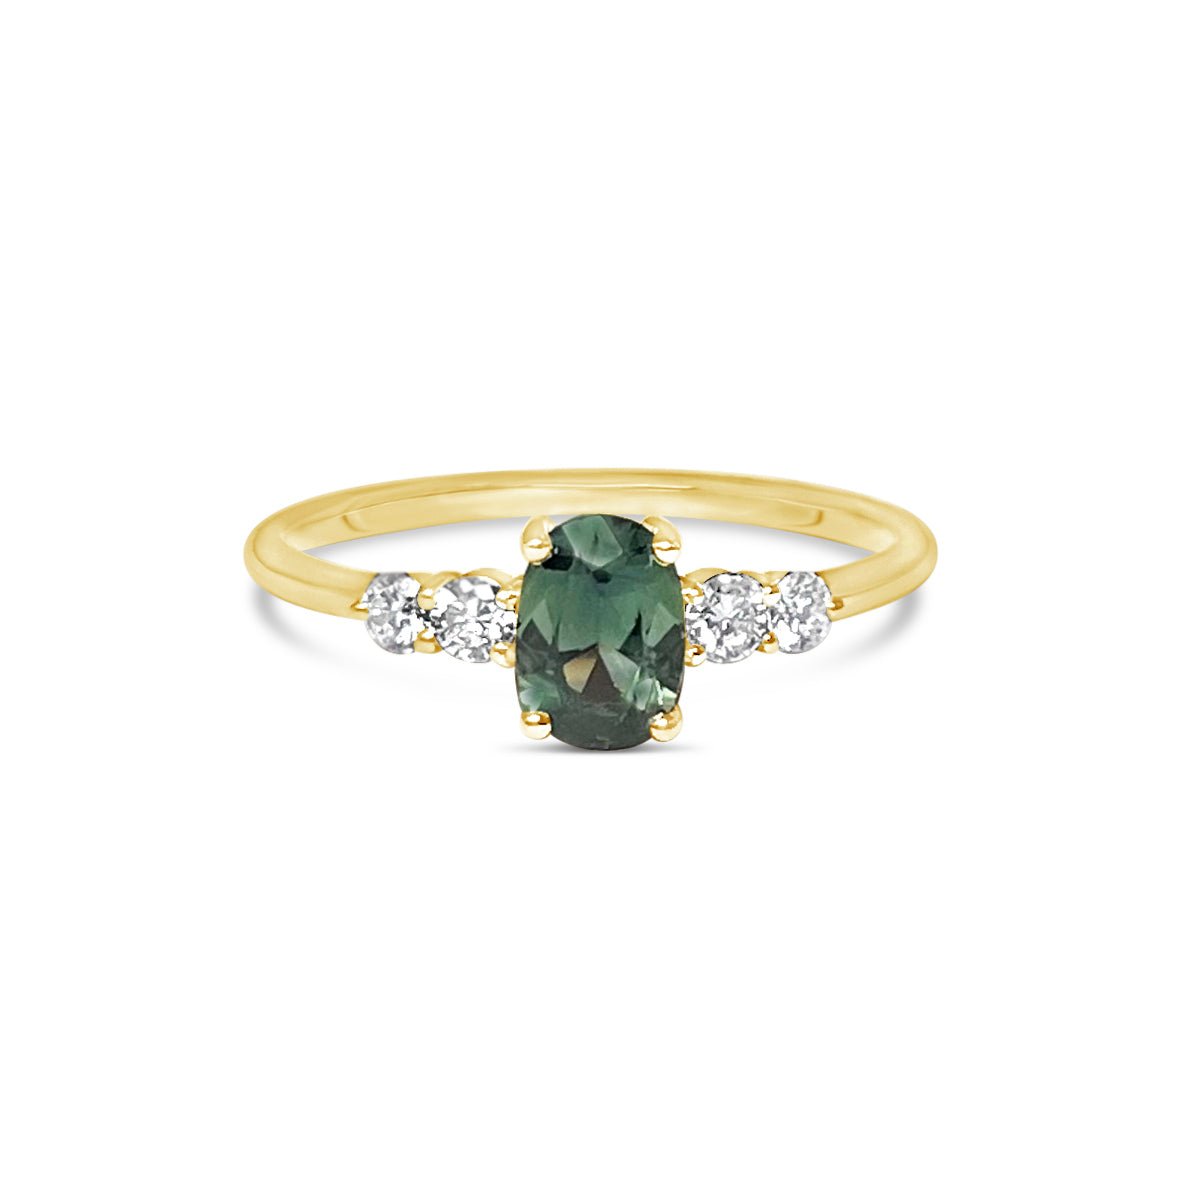 LANDEN || 1ct oval green sapphire and diamonds ring - LOFT.bijoux || Custom jewelry & wedding rings / Bijoux sur mesure & bagues de mariage || Montreal